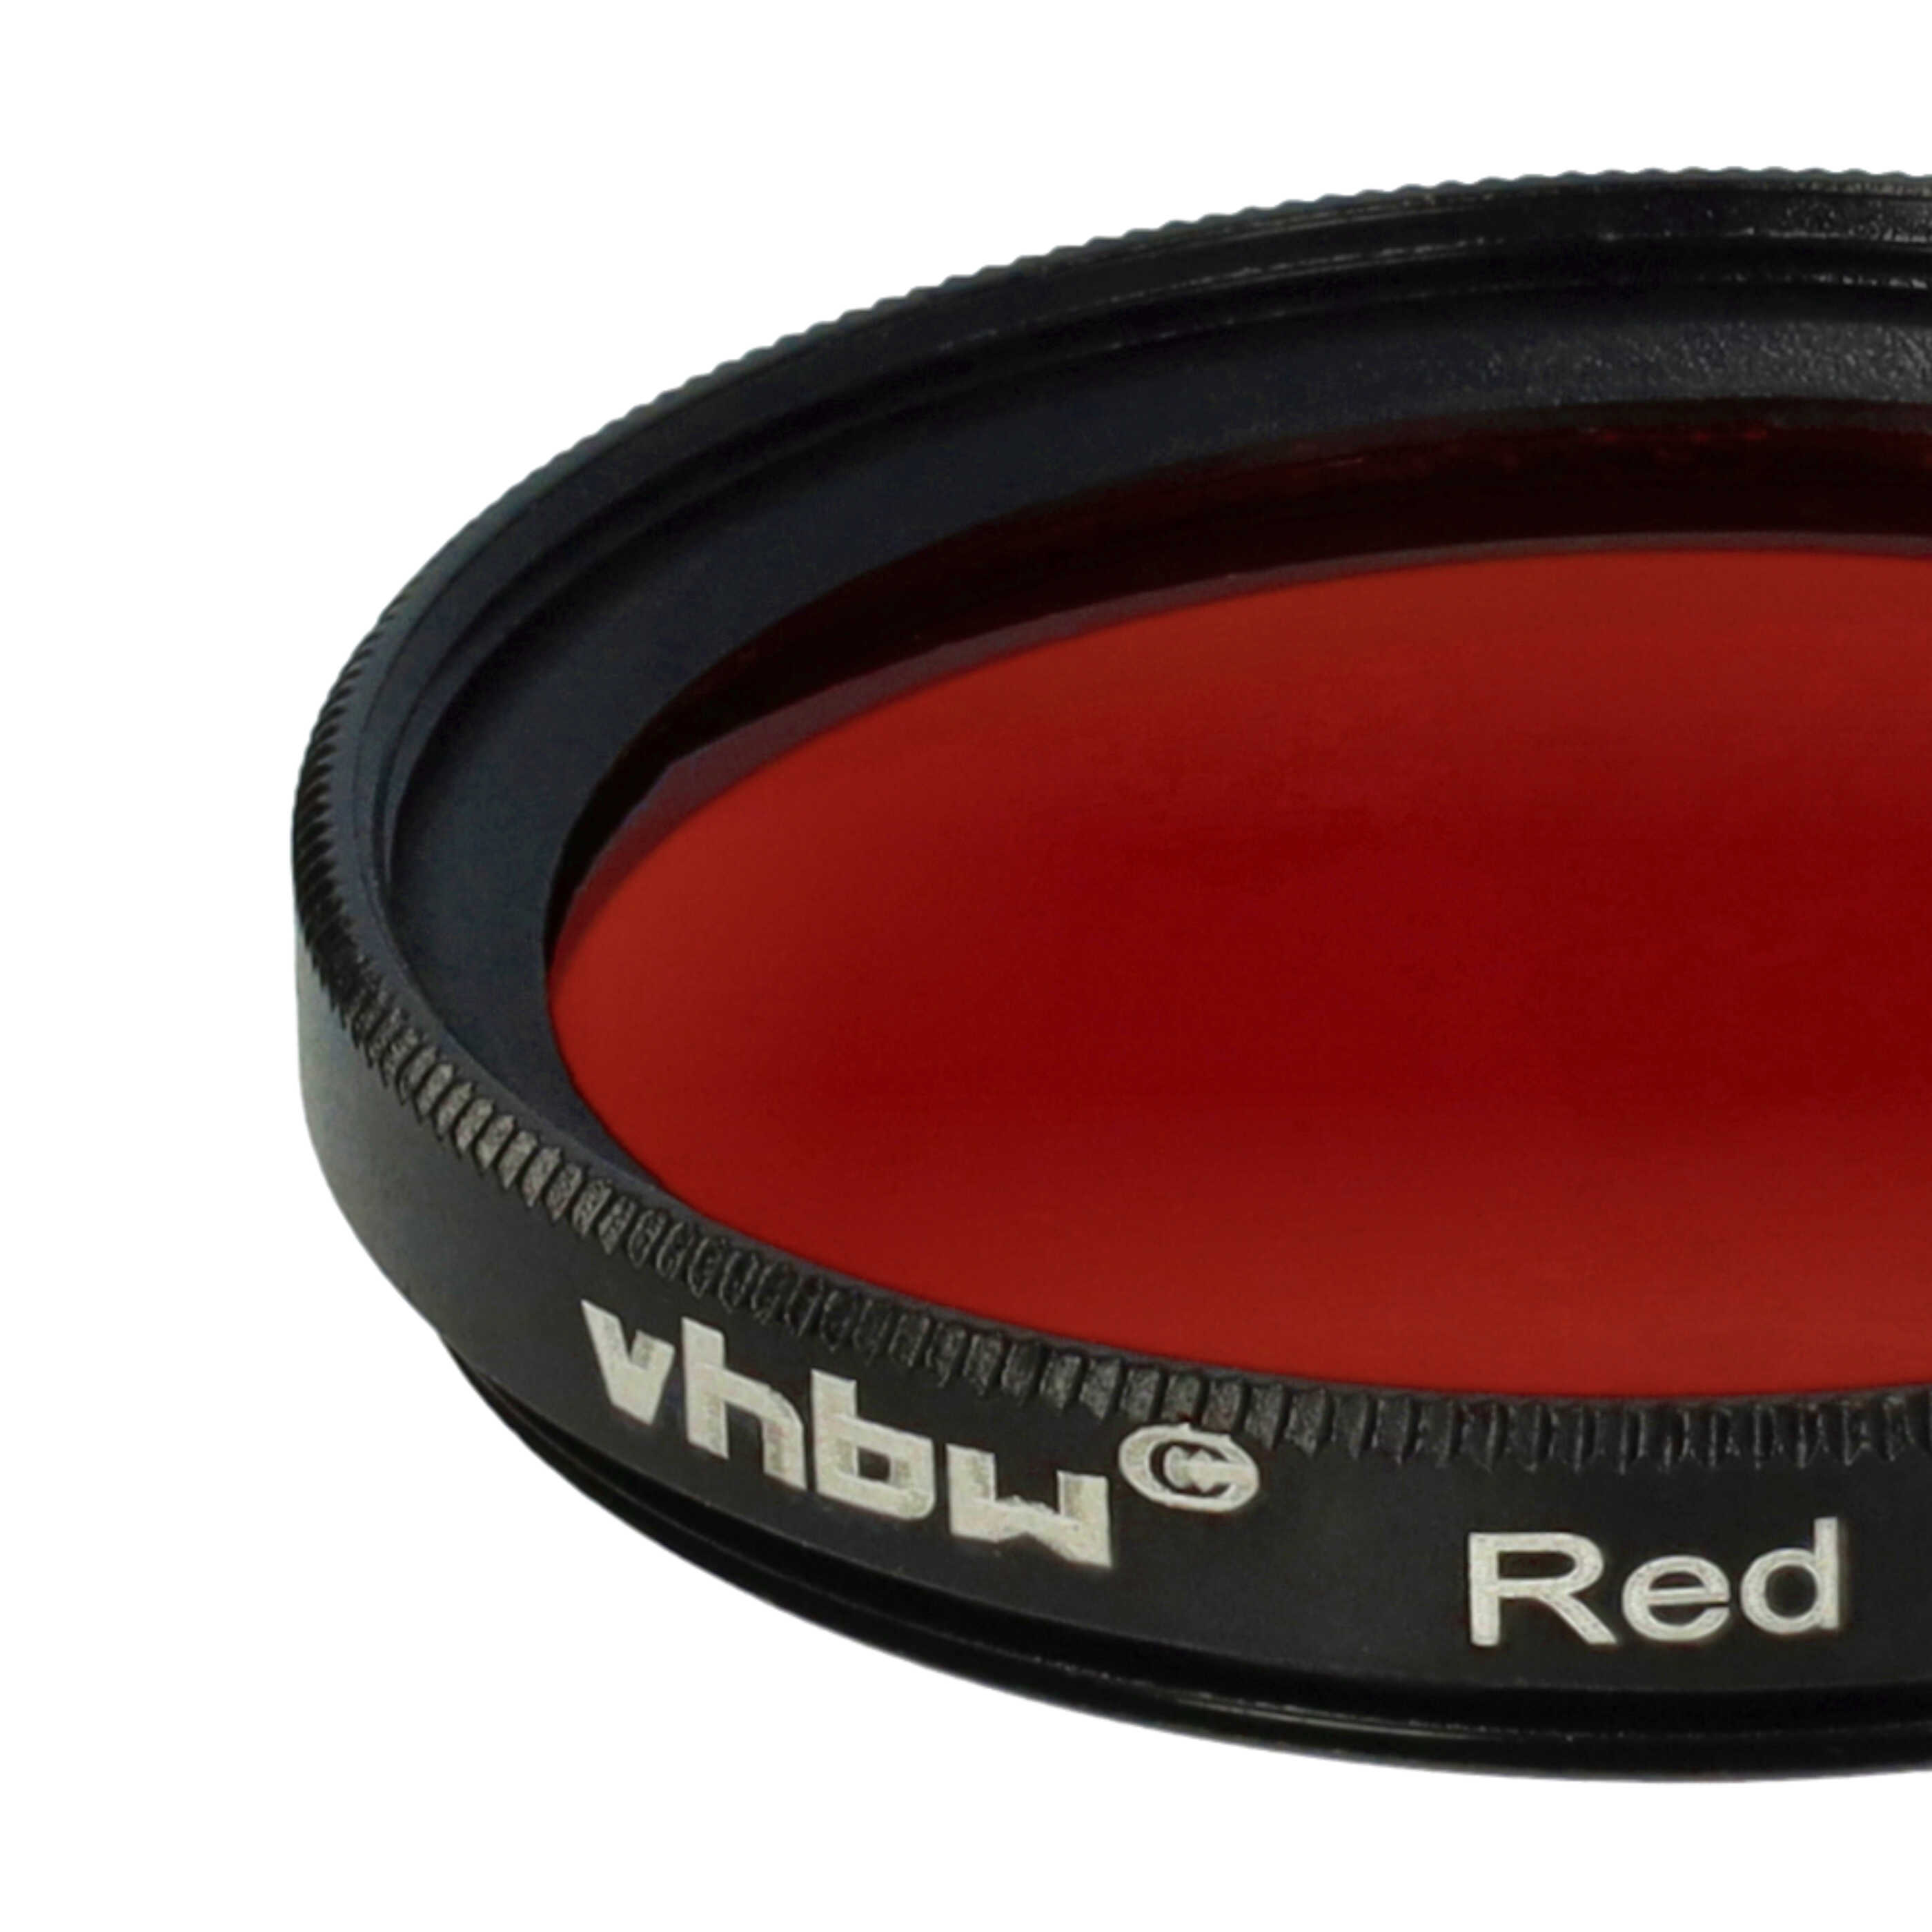 Filtre de couleur rouge pour objectifs d'appareils photo de 37 mm - Filtre rouge